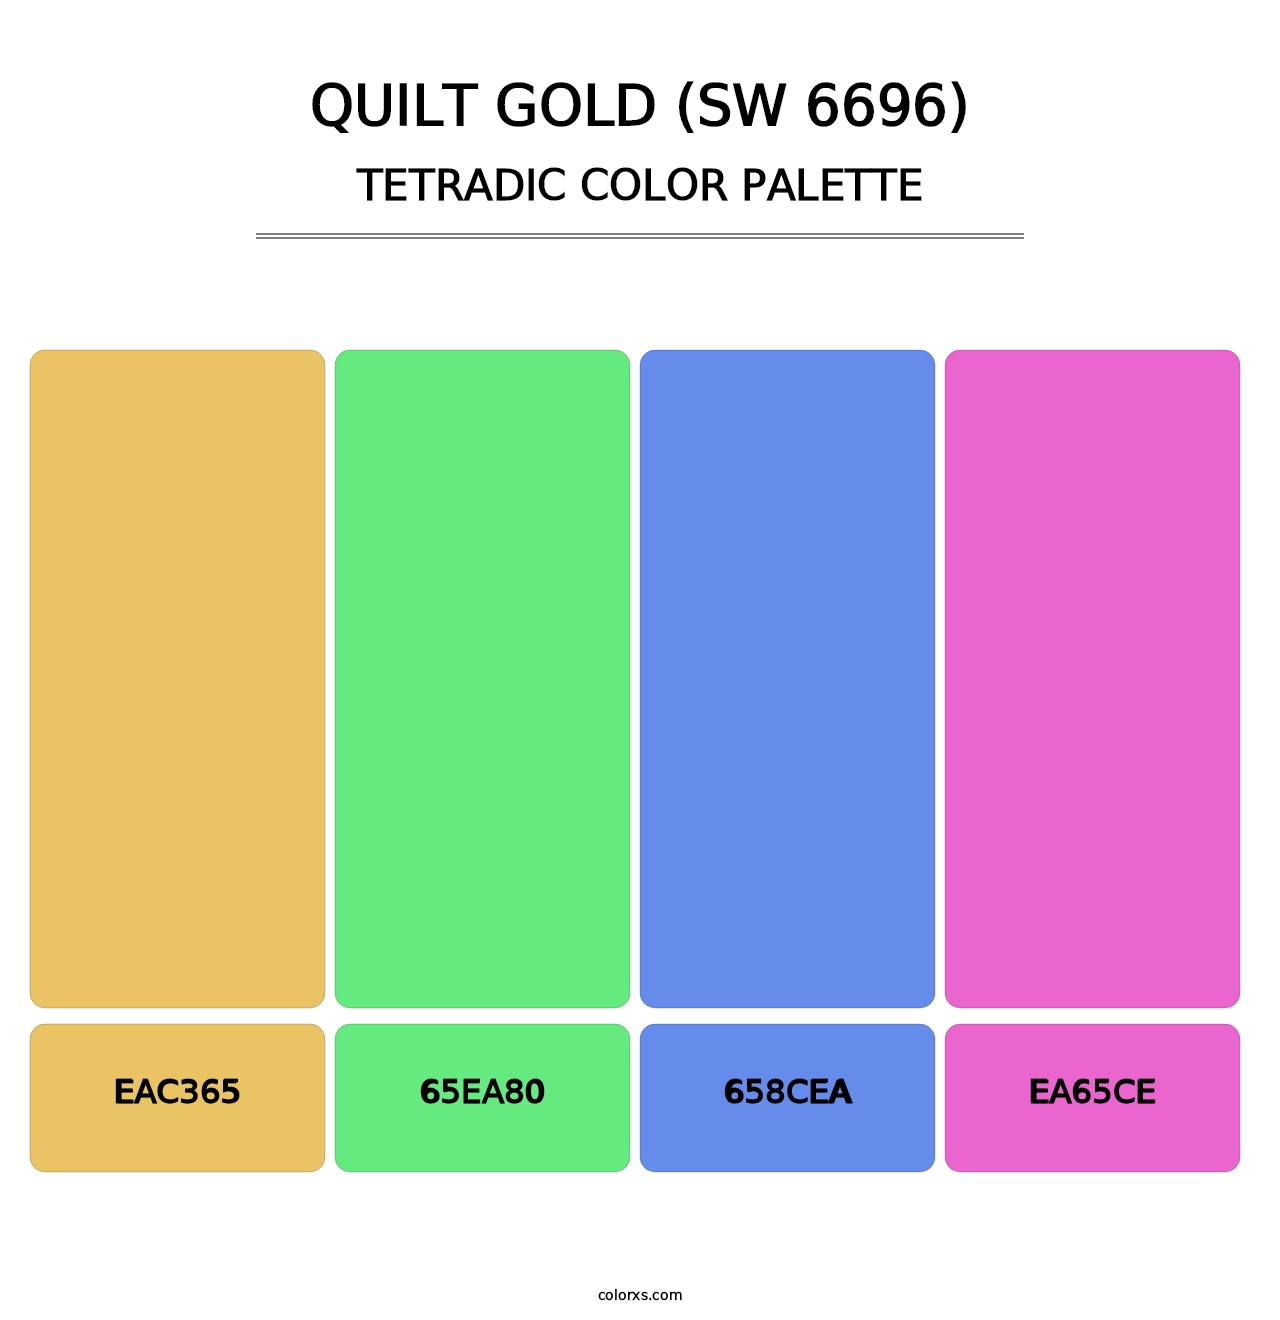 Quilt Gold (SW 6696) - Tetradic Color Palette